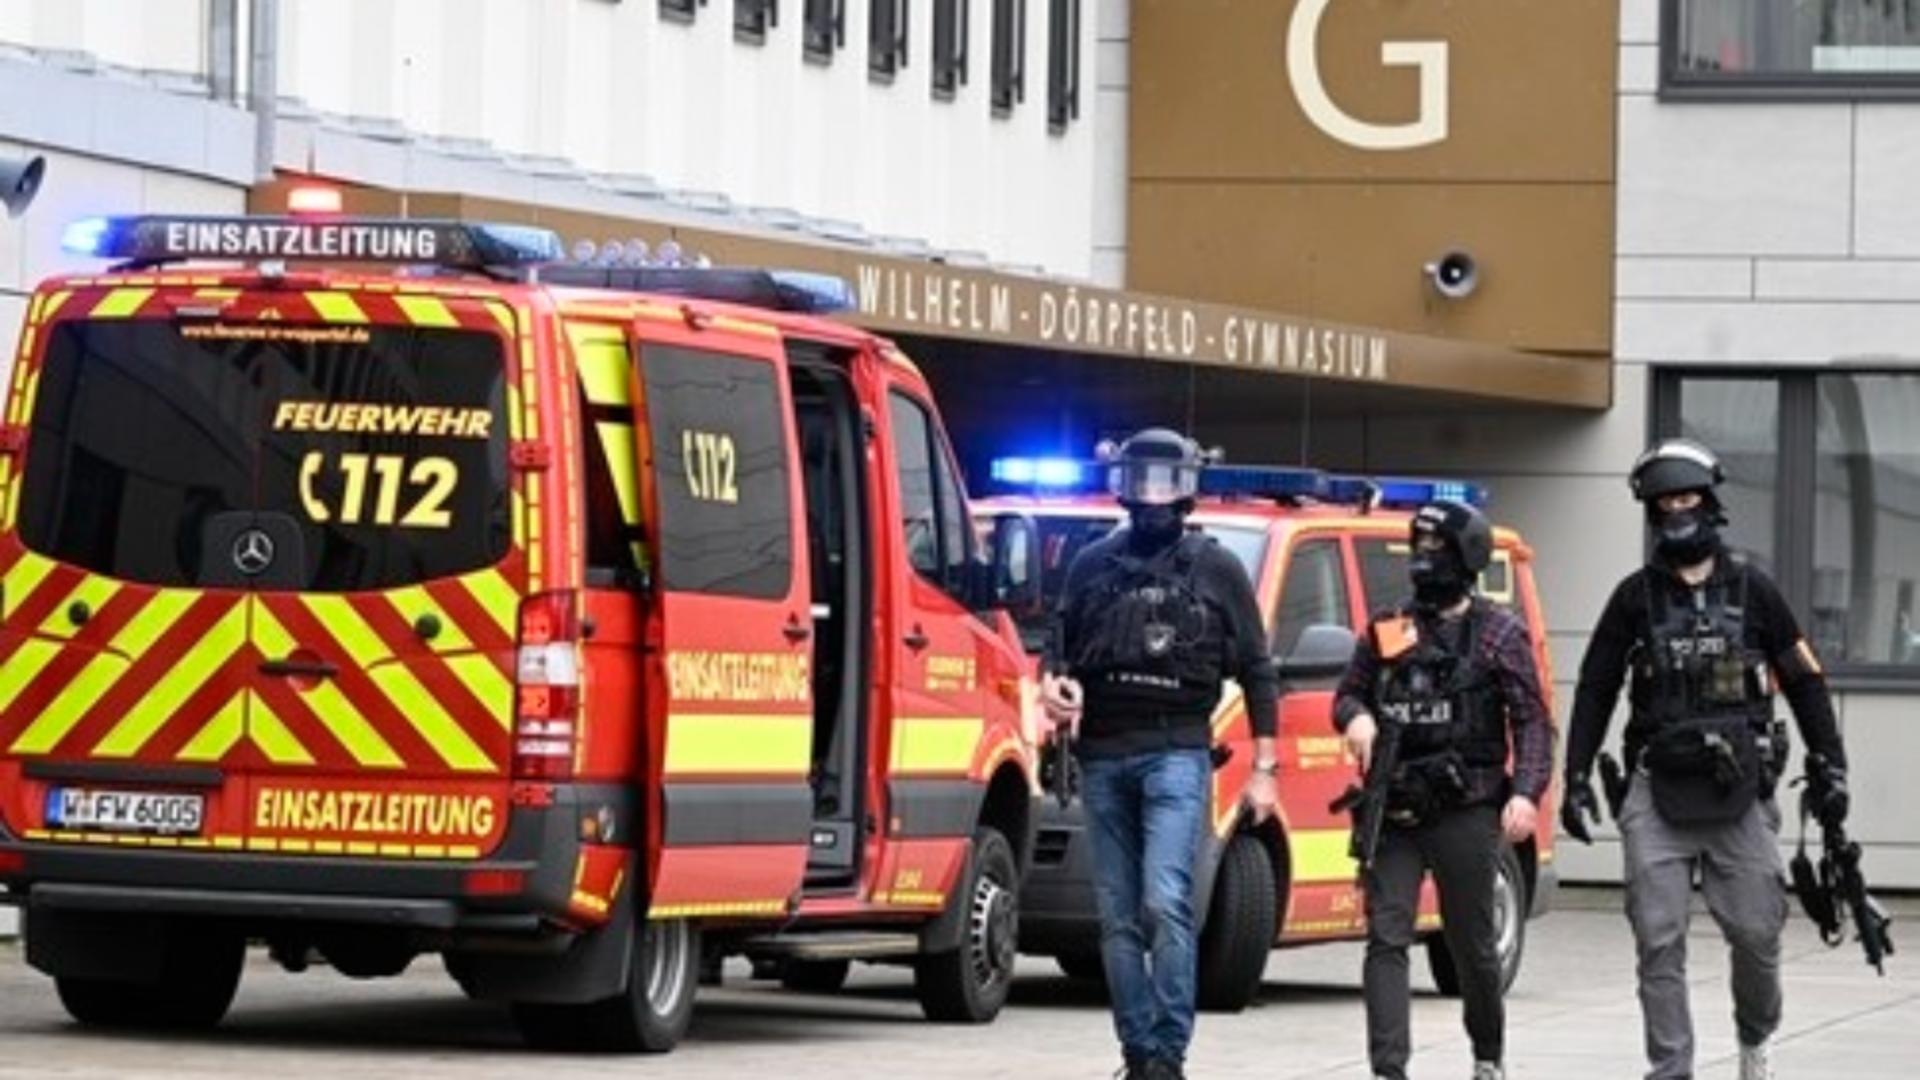  Atac brutal asupra unei școli, în Germania. Foto: Profimedia